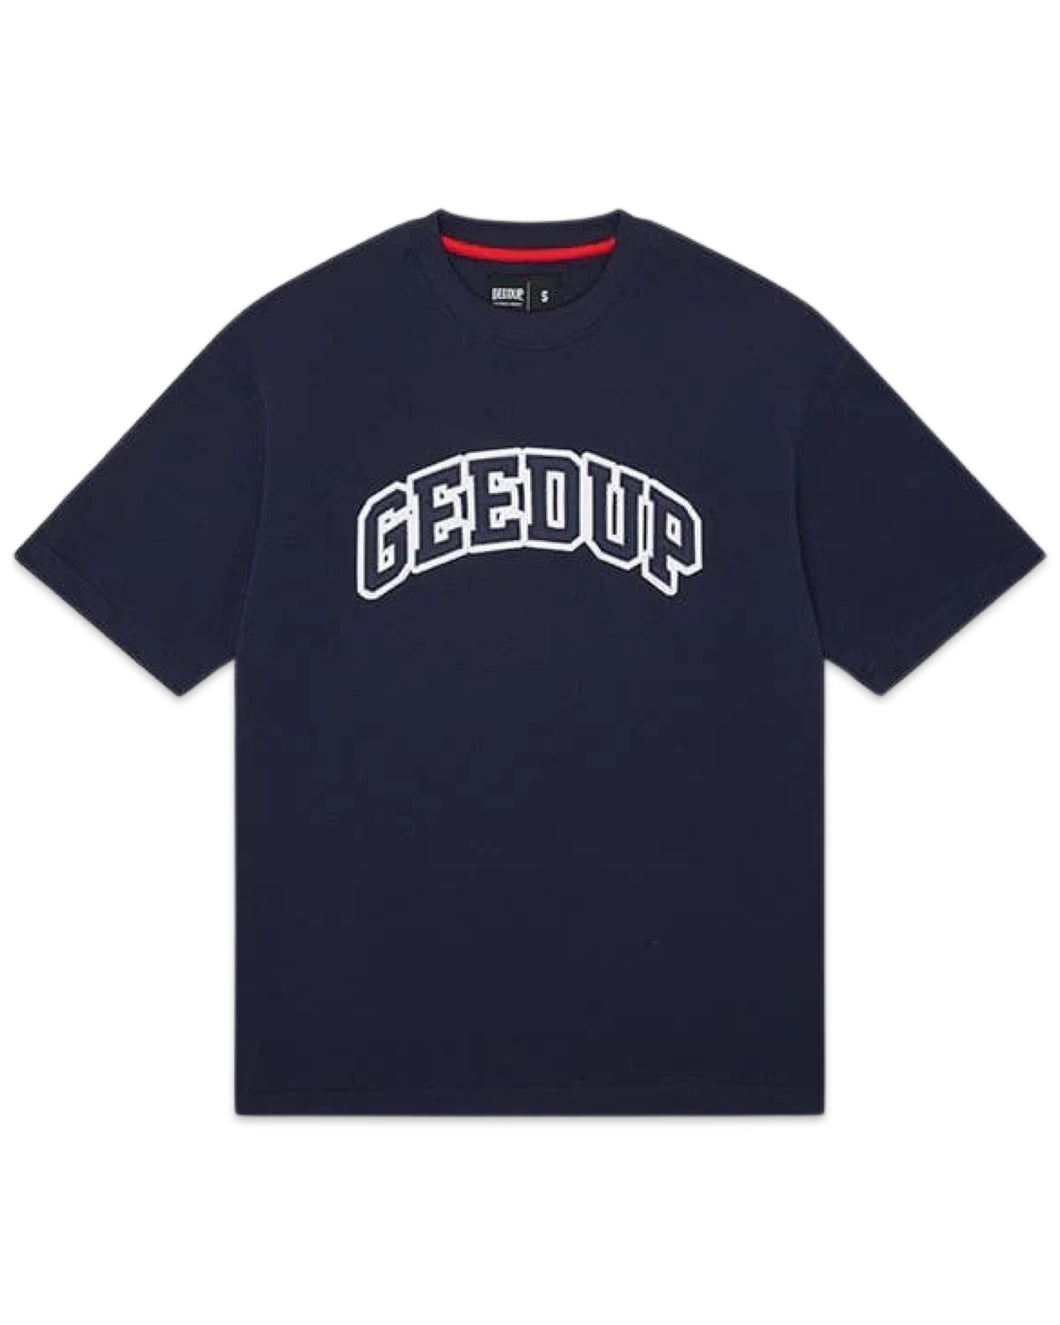 Geedup Team Logo T-Shirt Navy Autumn Del.1/24